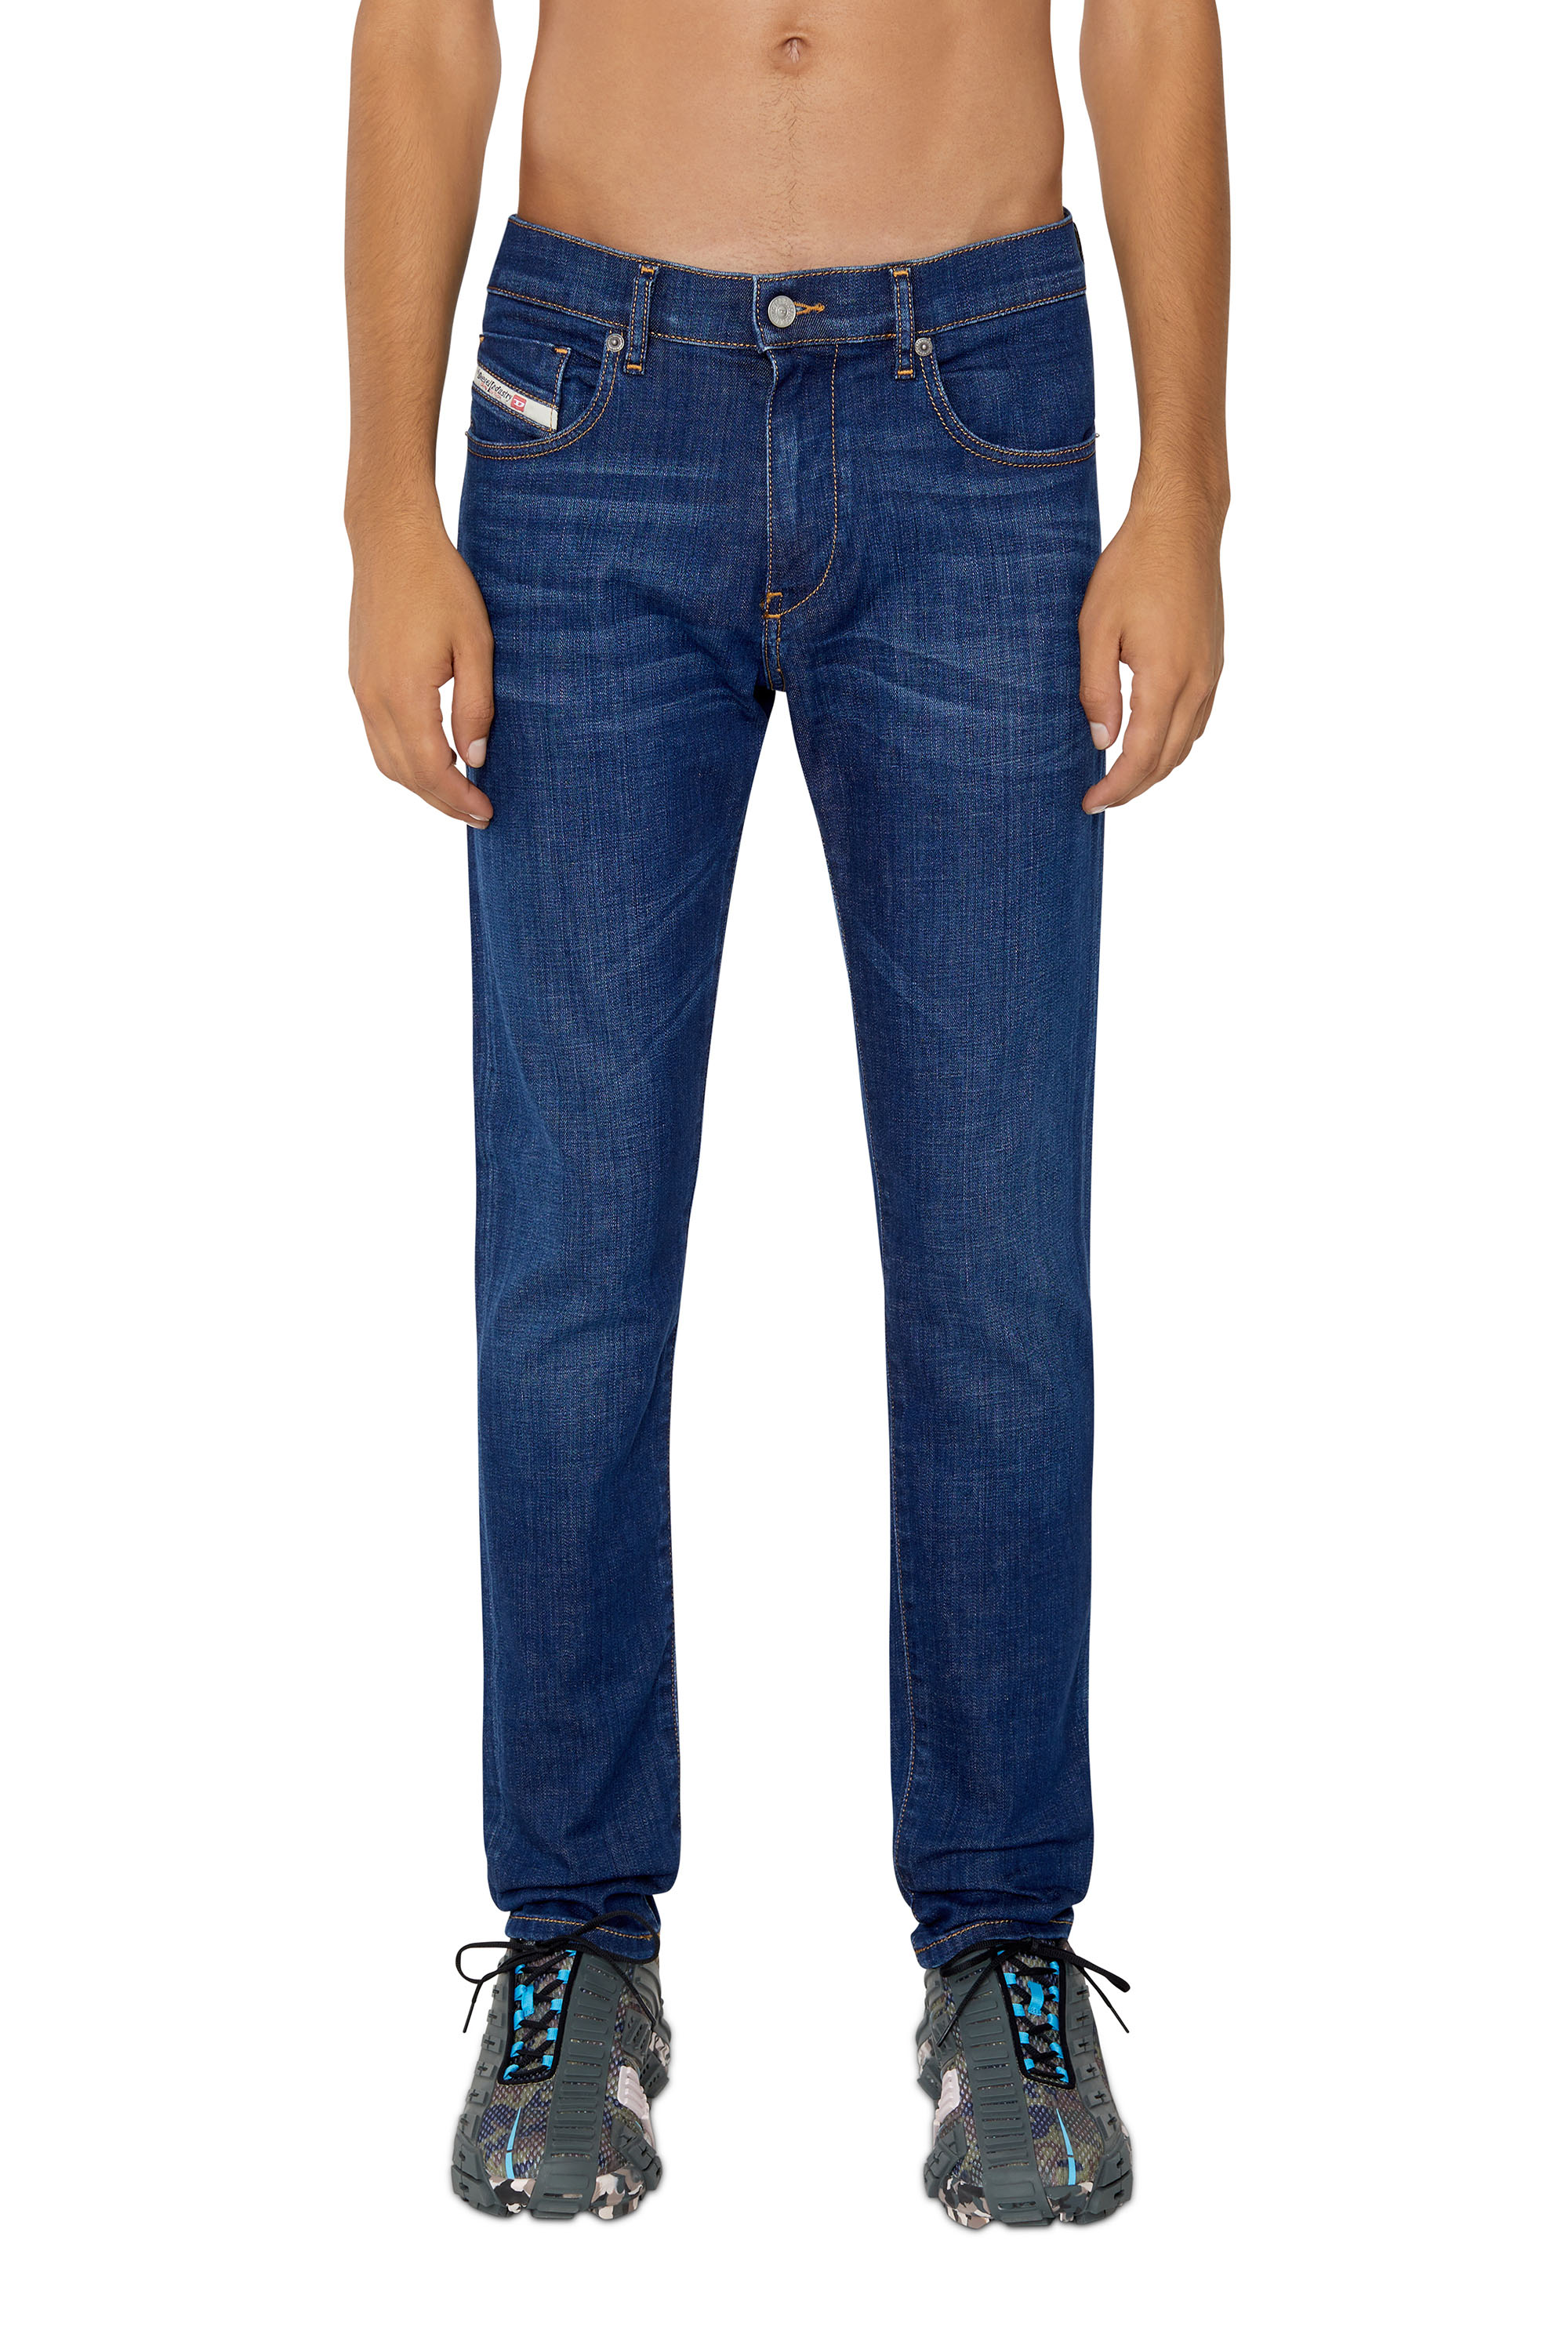 Mens Clothing Jeans Straight-leg jeans for Men Blue DIESEL Denim d-strukt Jeans in Navy Blue 